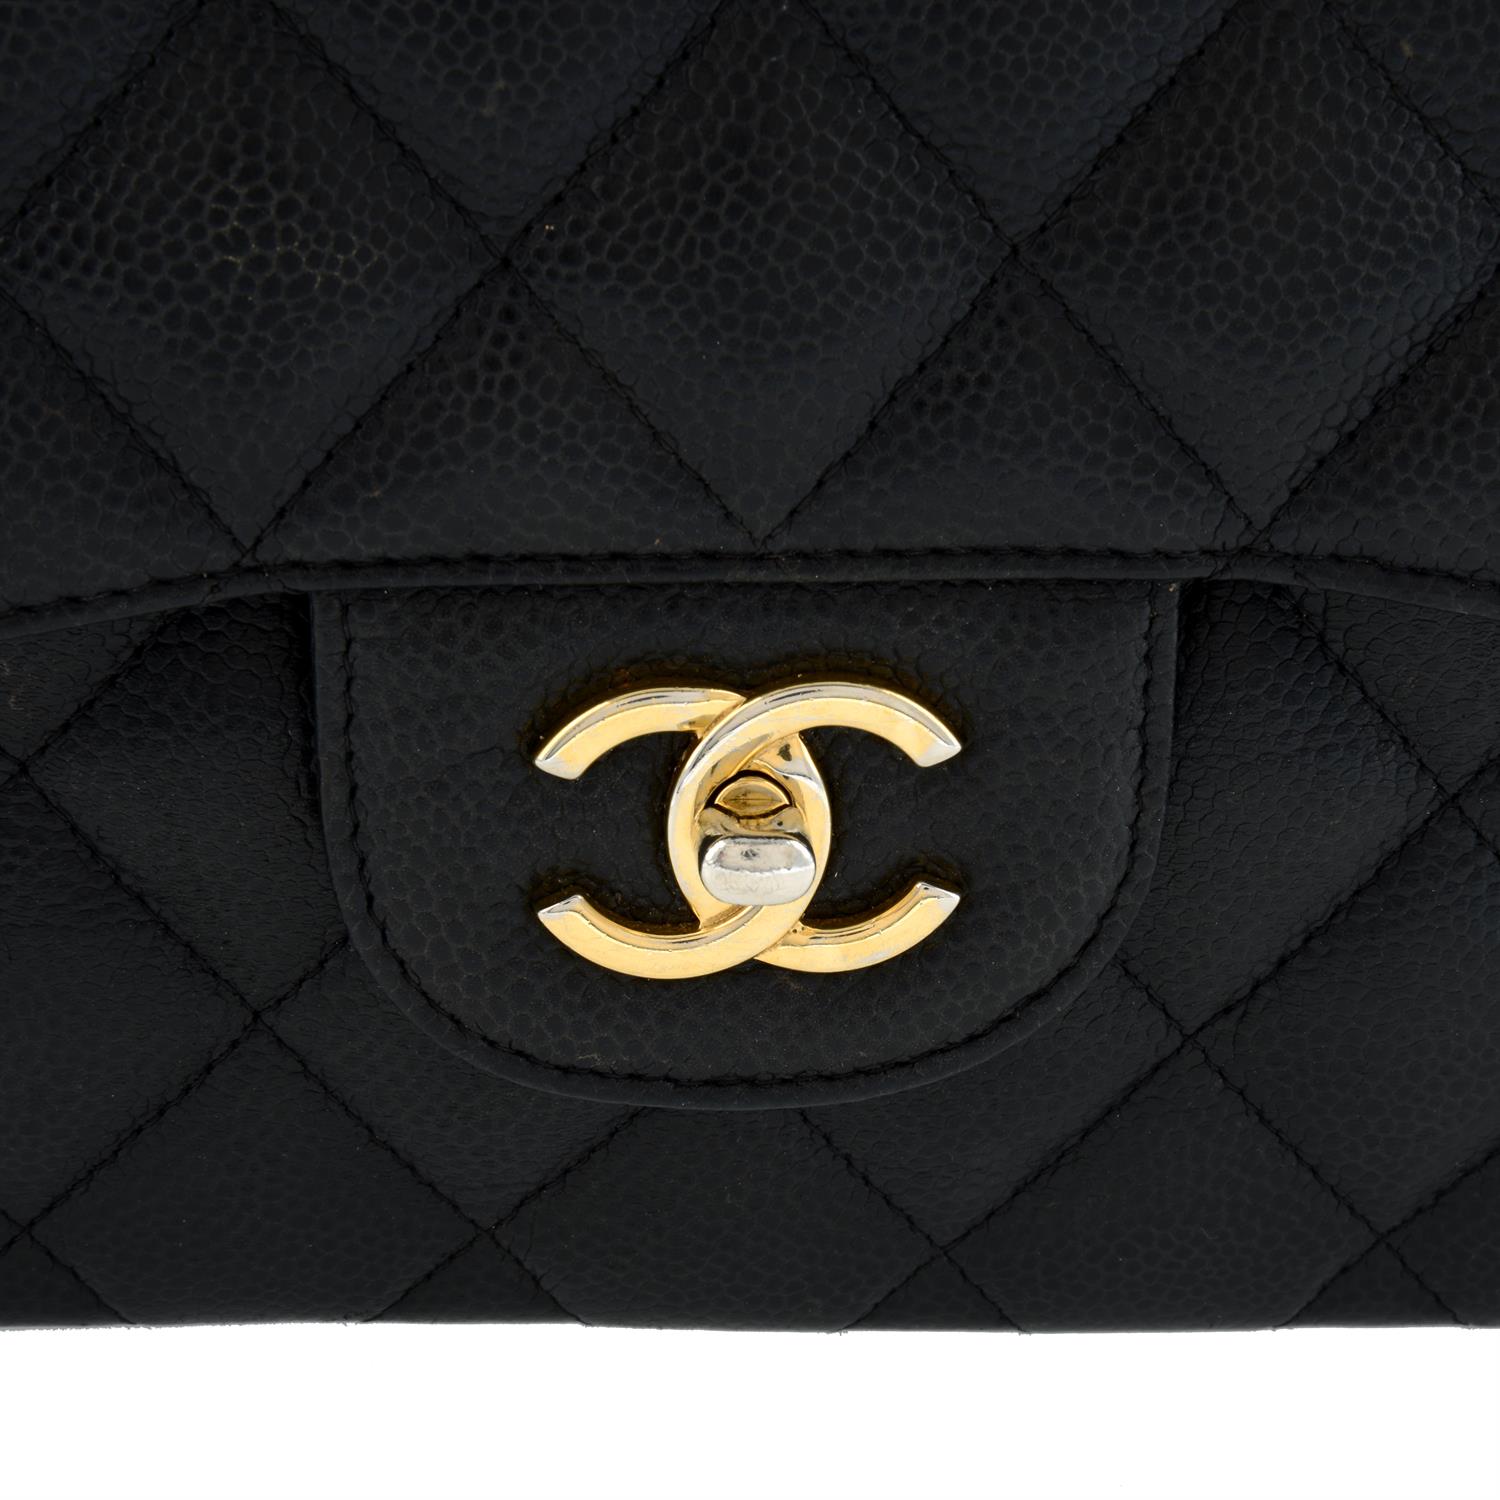 Chanel - Caviar Jumbo Double Flap. - Image 4 of 5